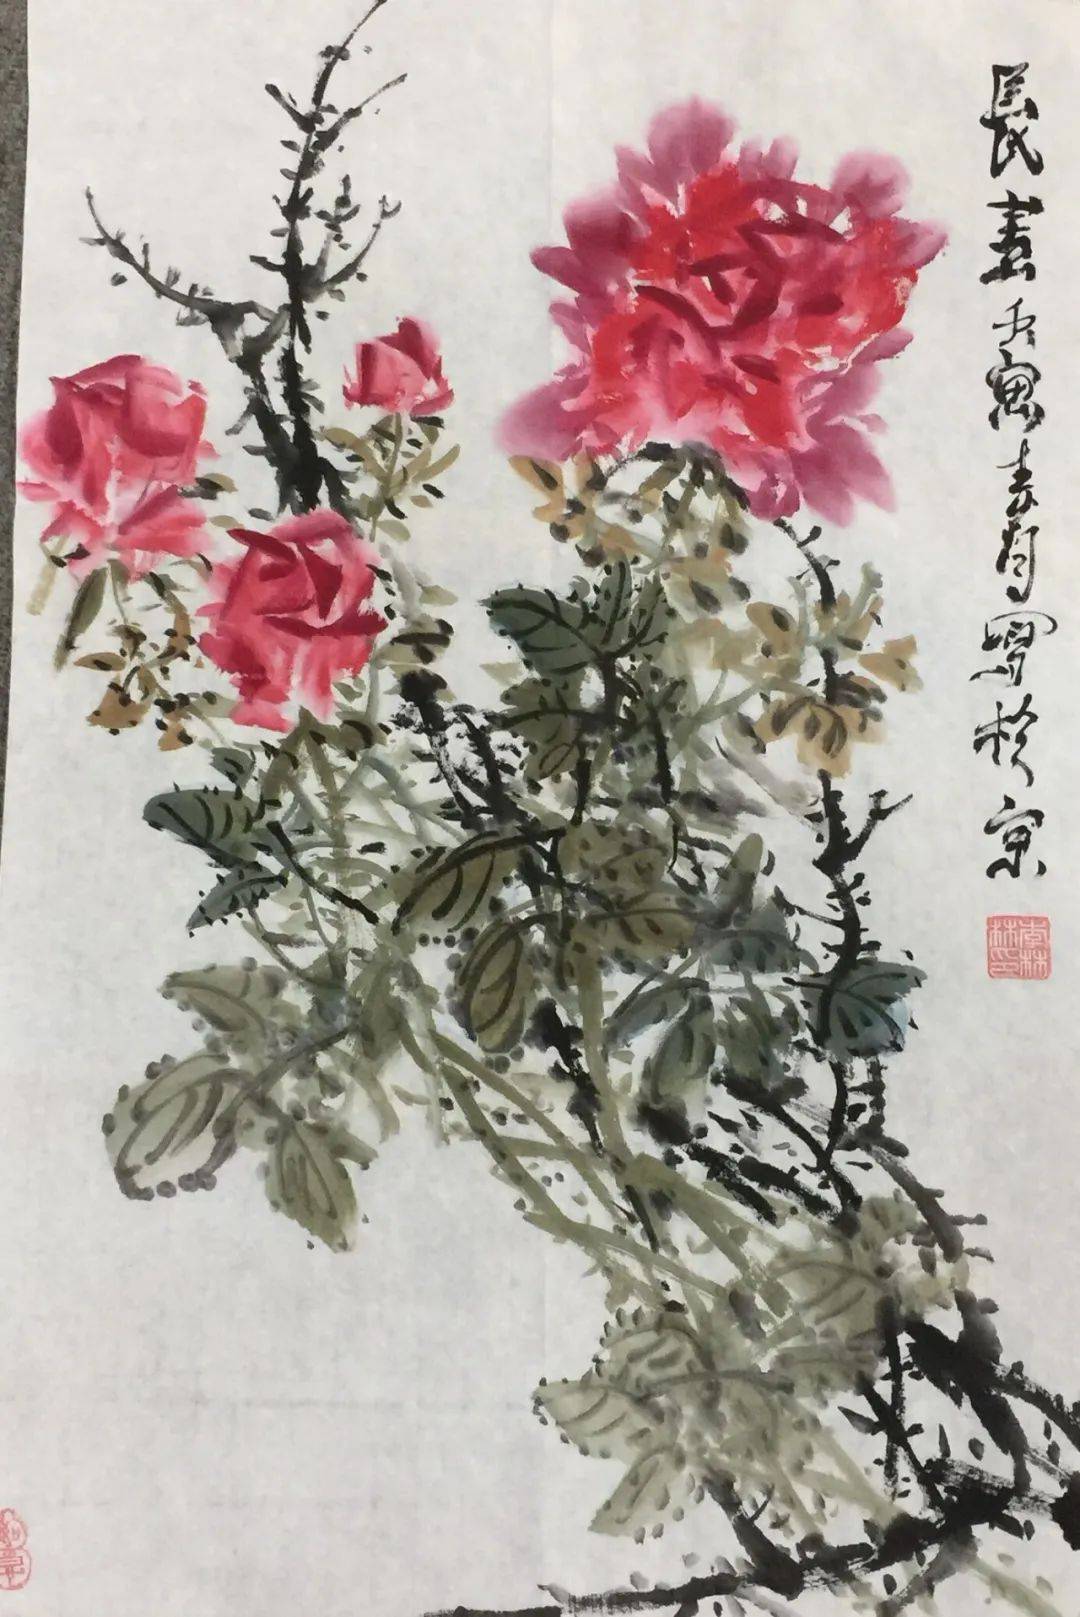 李林林画家的花鸟画,构图巧妙新颖,笔法细腻生动,题材多变,所作花卉